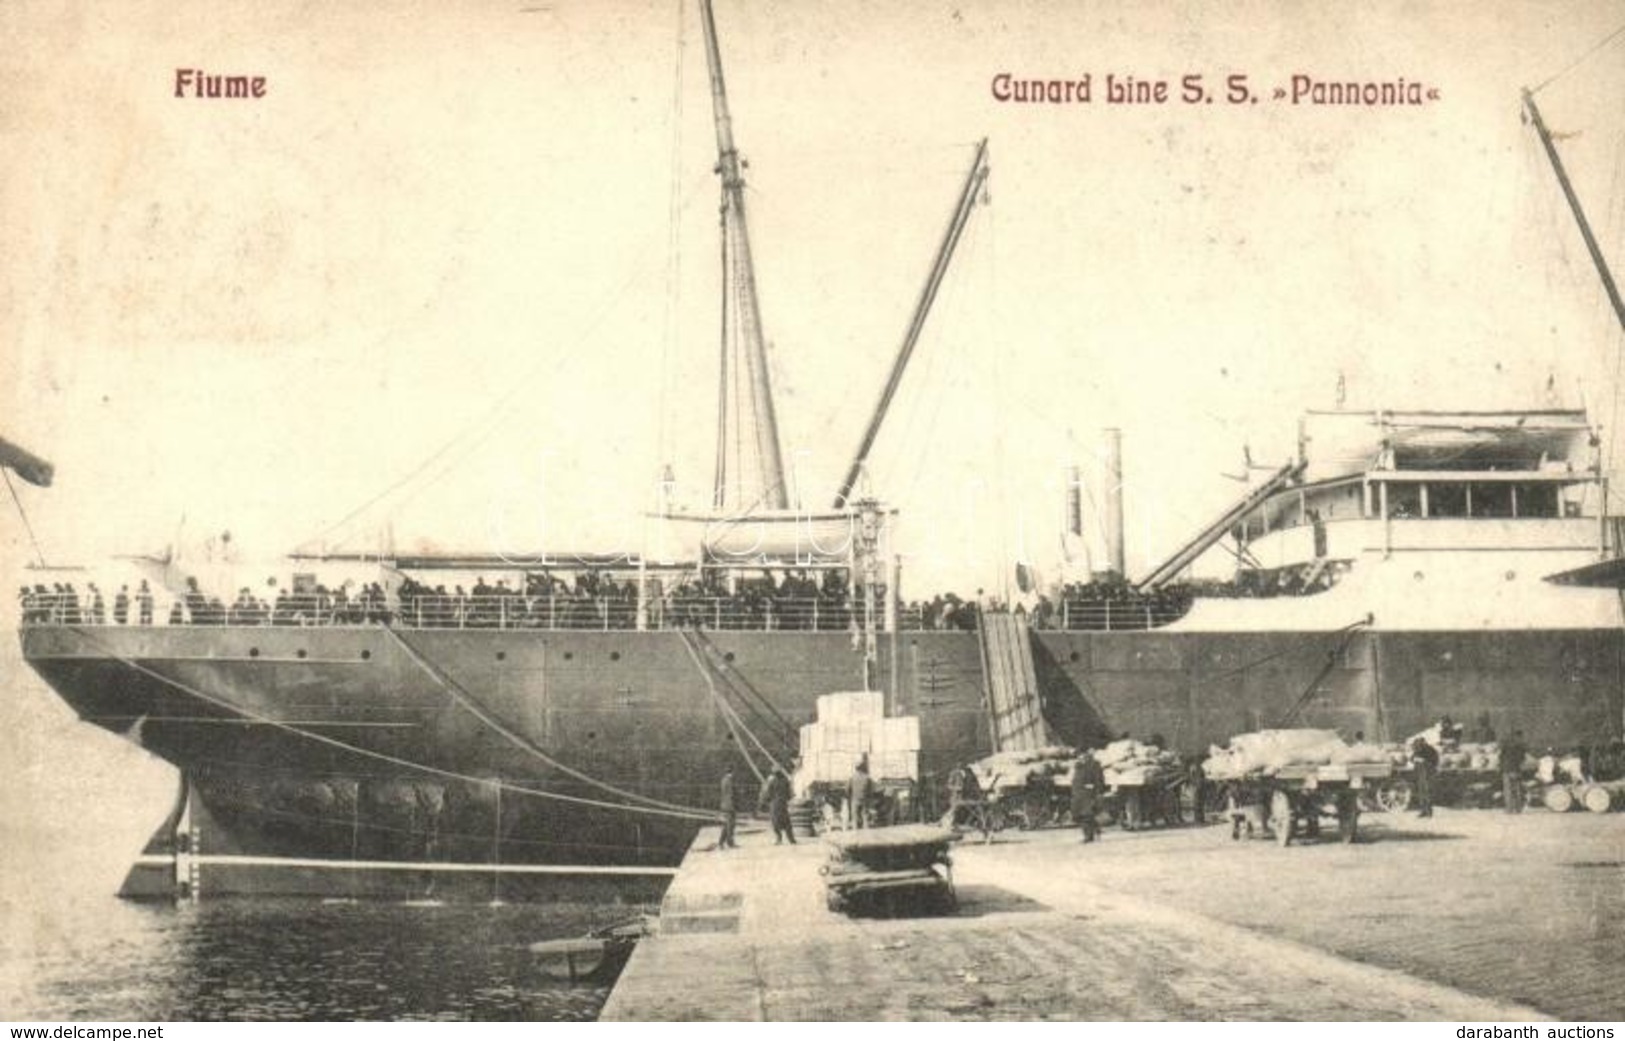 T2 1910 Pannónia Kivándorlási Hajó A Fiume-i Kikötőben. Reis Isidor Kiadása / Cunard Line SS Pannonia / Emigration Ship  - Non Classés